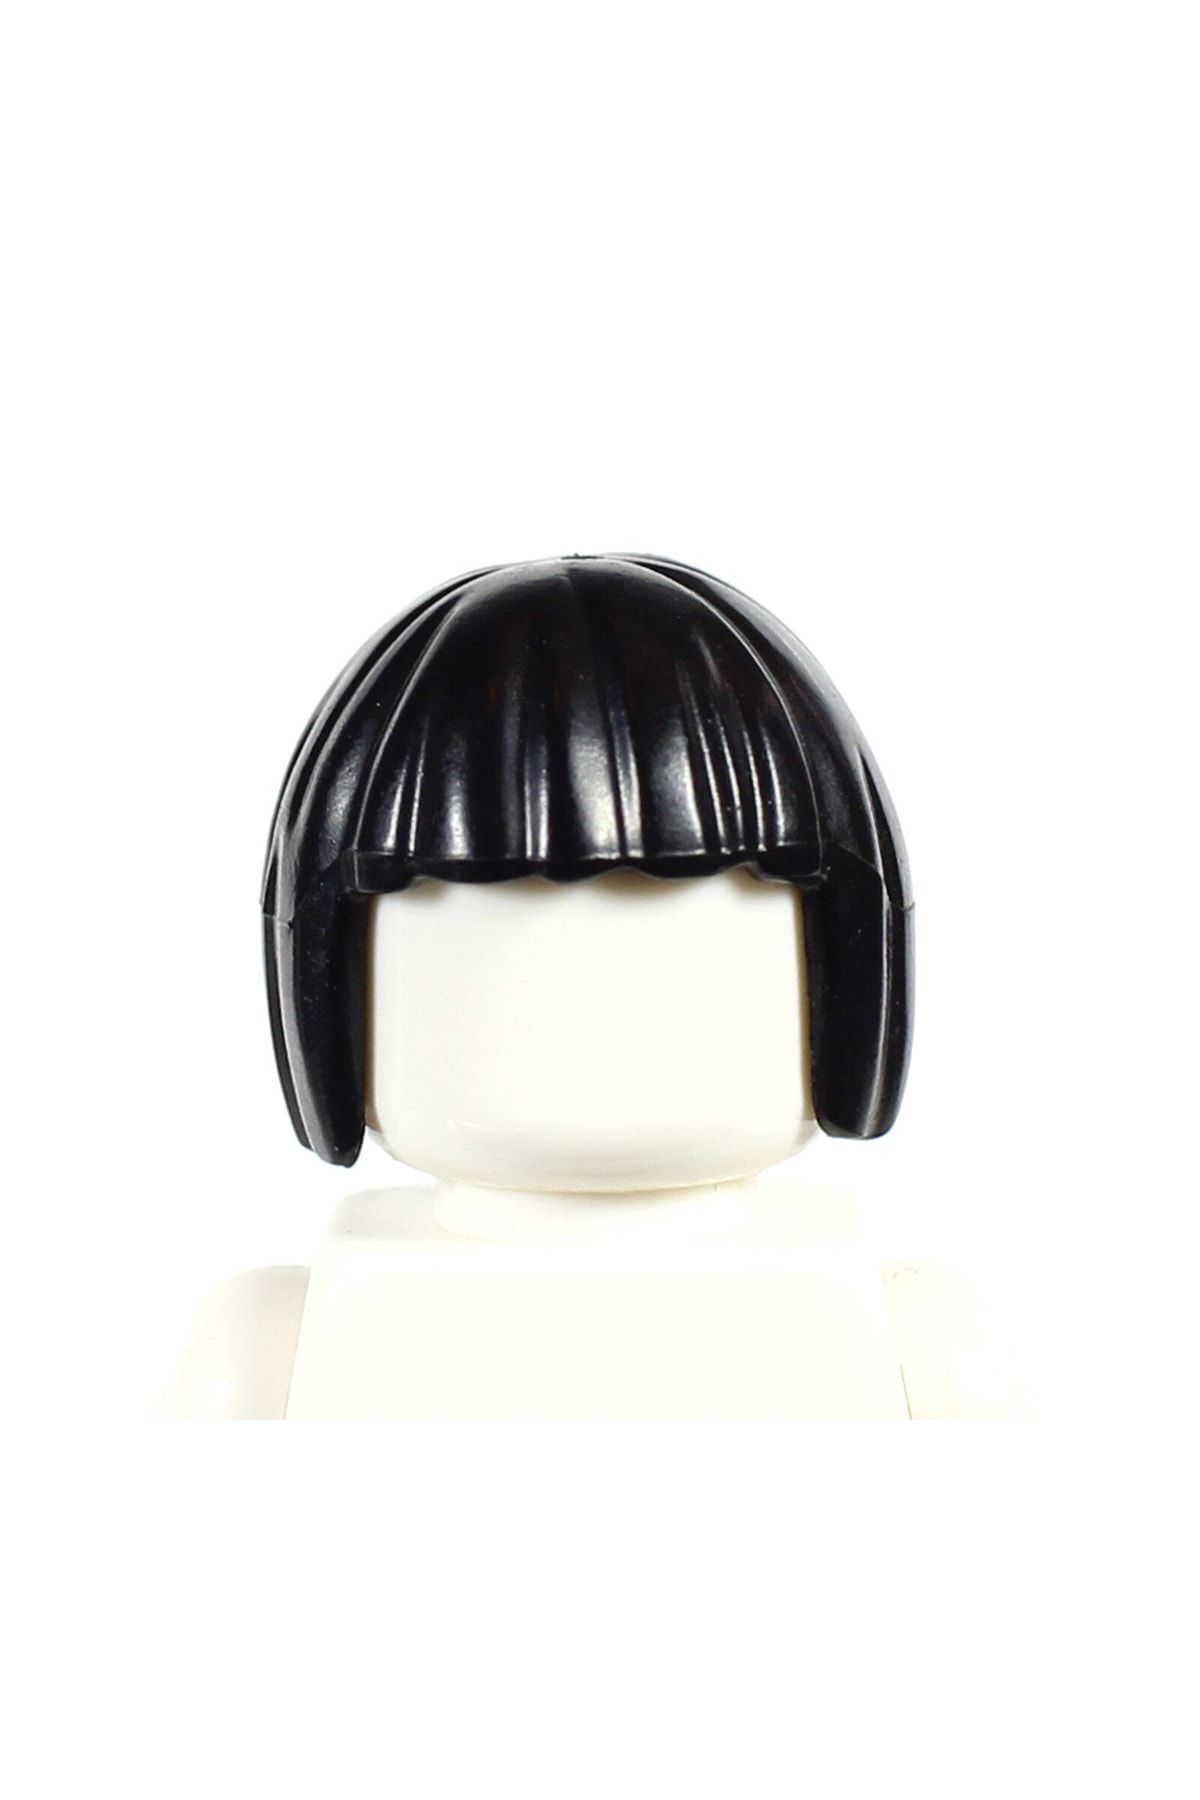 LEGO Orjinal Aksesuar Moc Minifigür Minifigure Siyah Küt Kahküllü Kadın Saç 1 Adet Gönderilecek